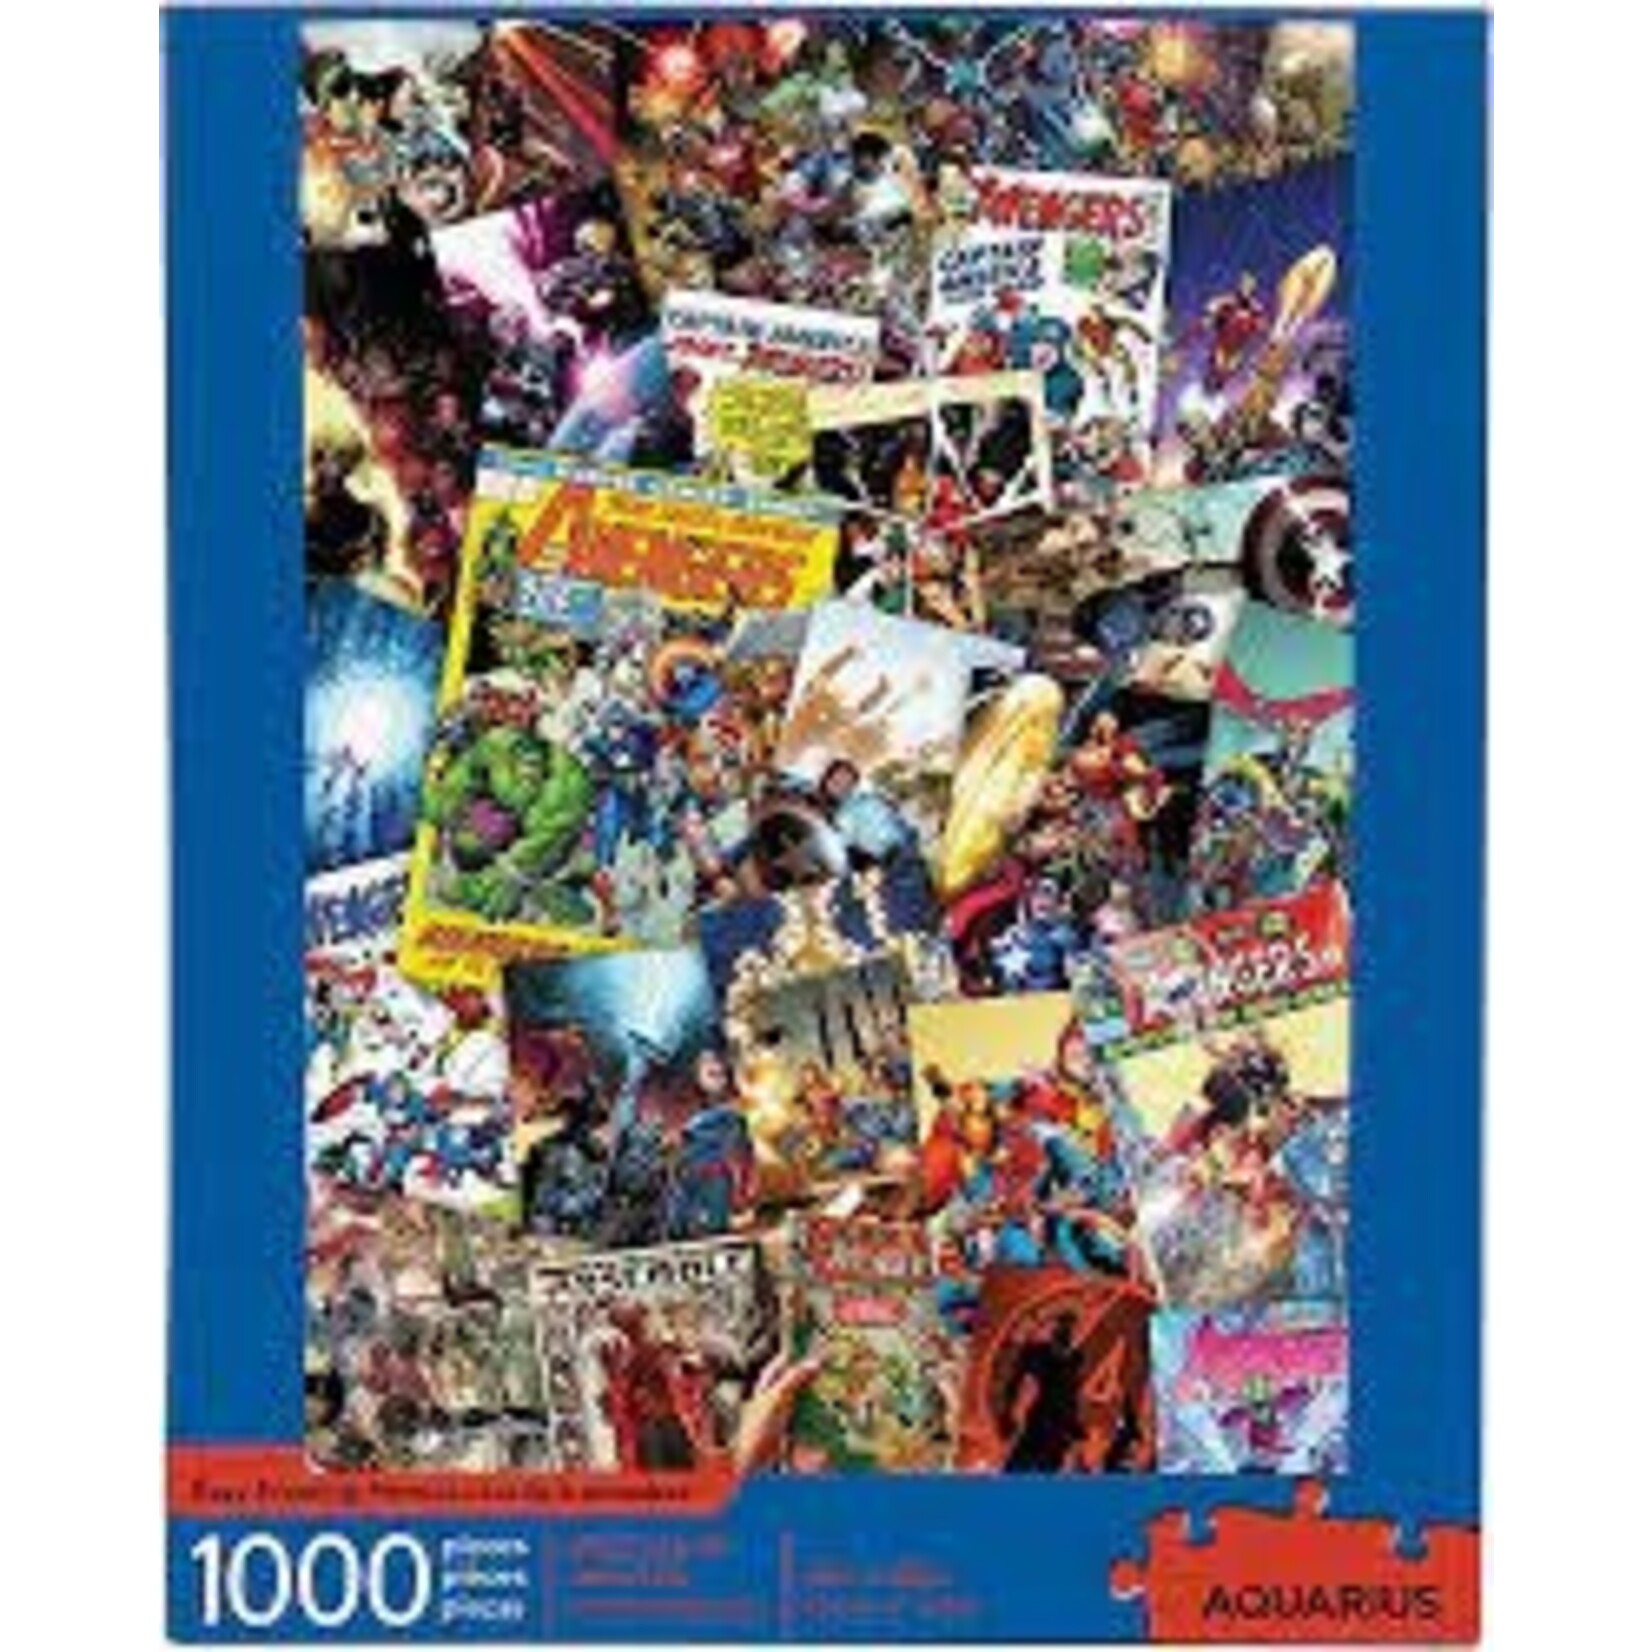 Aquarius AQU65350 Marvel Avengers Collage (Puzzle1000)